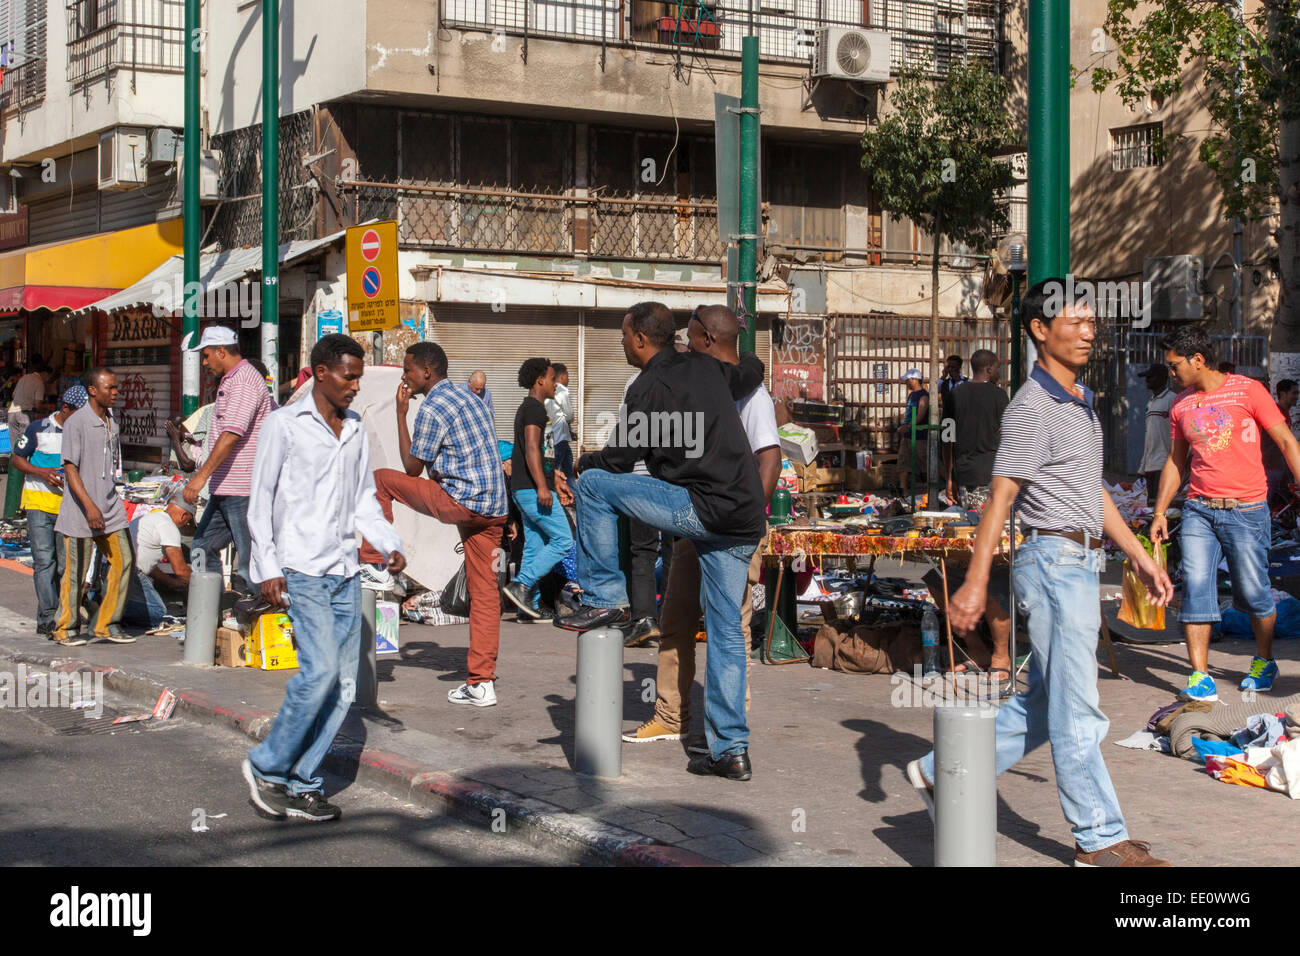 Les migrants africains au centre-ville de Tel Aviv, Israël Banque D'Images